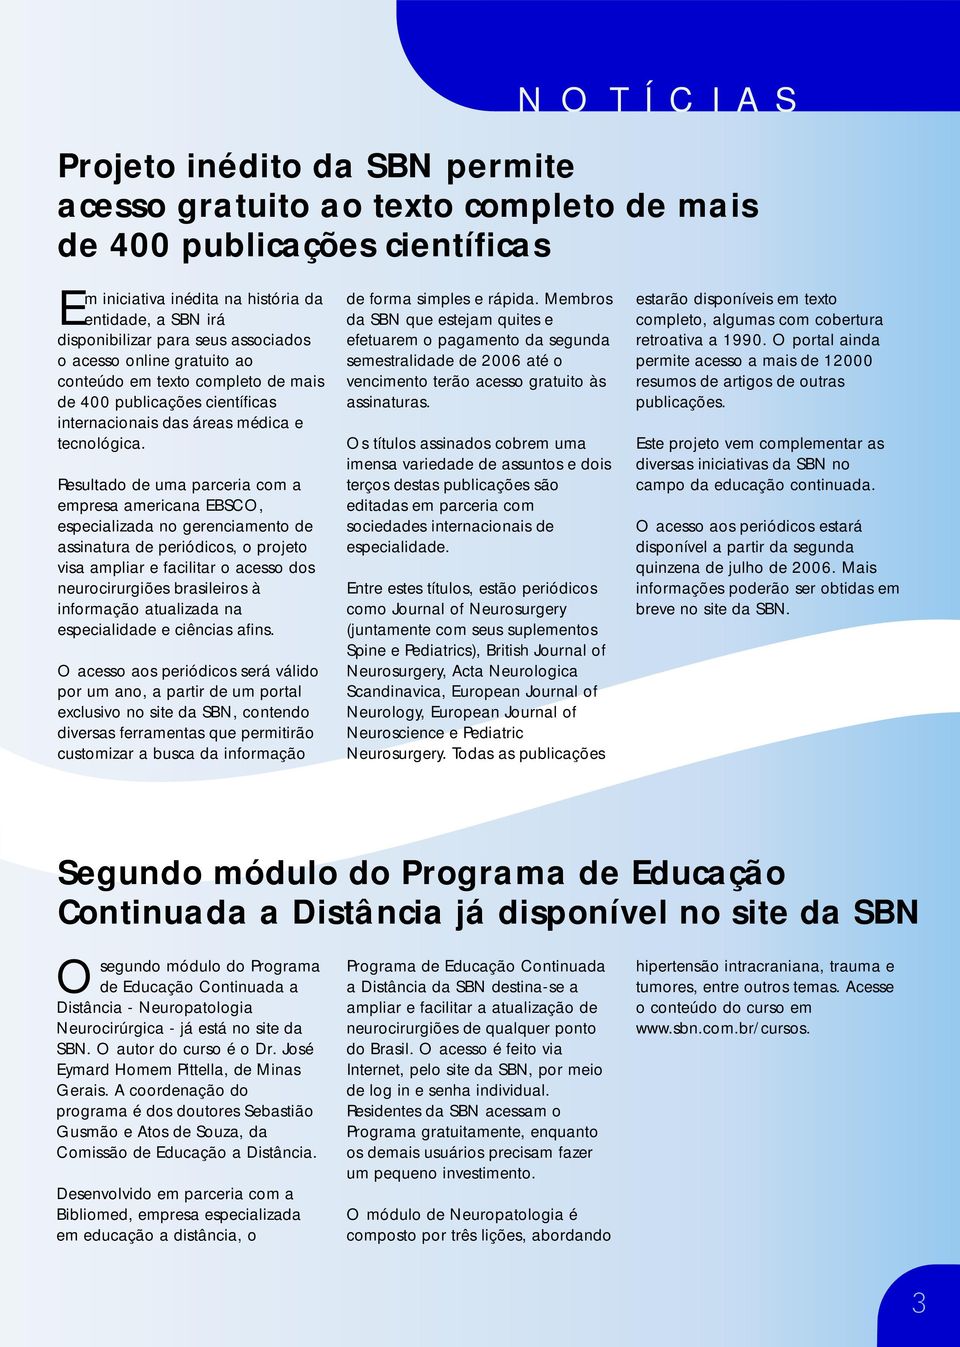 Resultado de uma parceria com a empresa americana EBSCO, especializada no gerenciamento de assinatura de periódicos, o projeto visa ampliar e facilitar o acesso dos neurocirurgiões brasileiros à